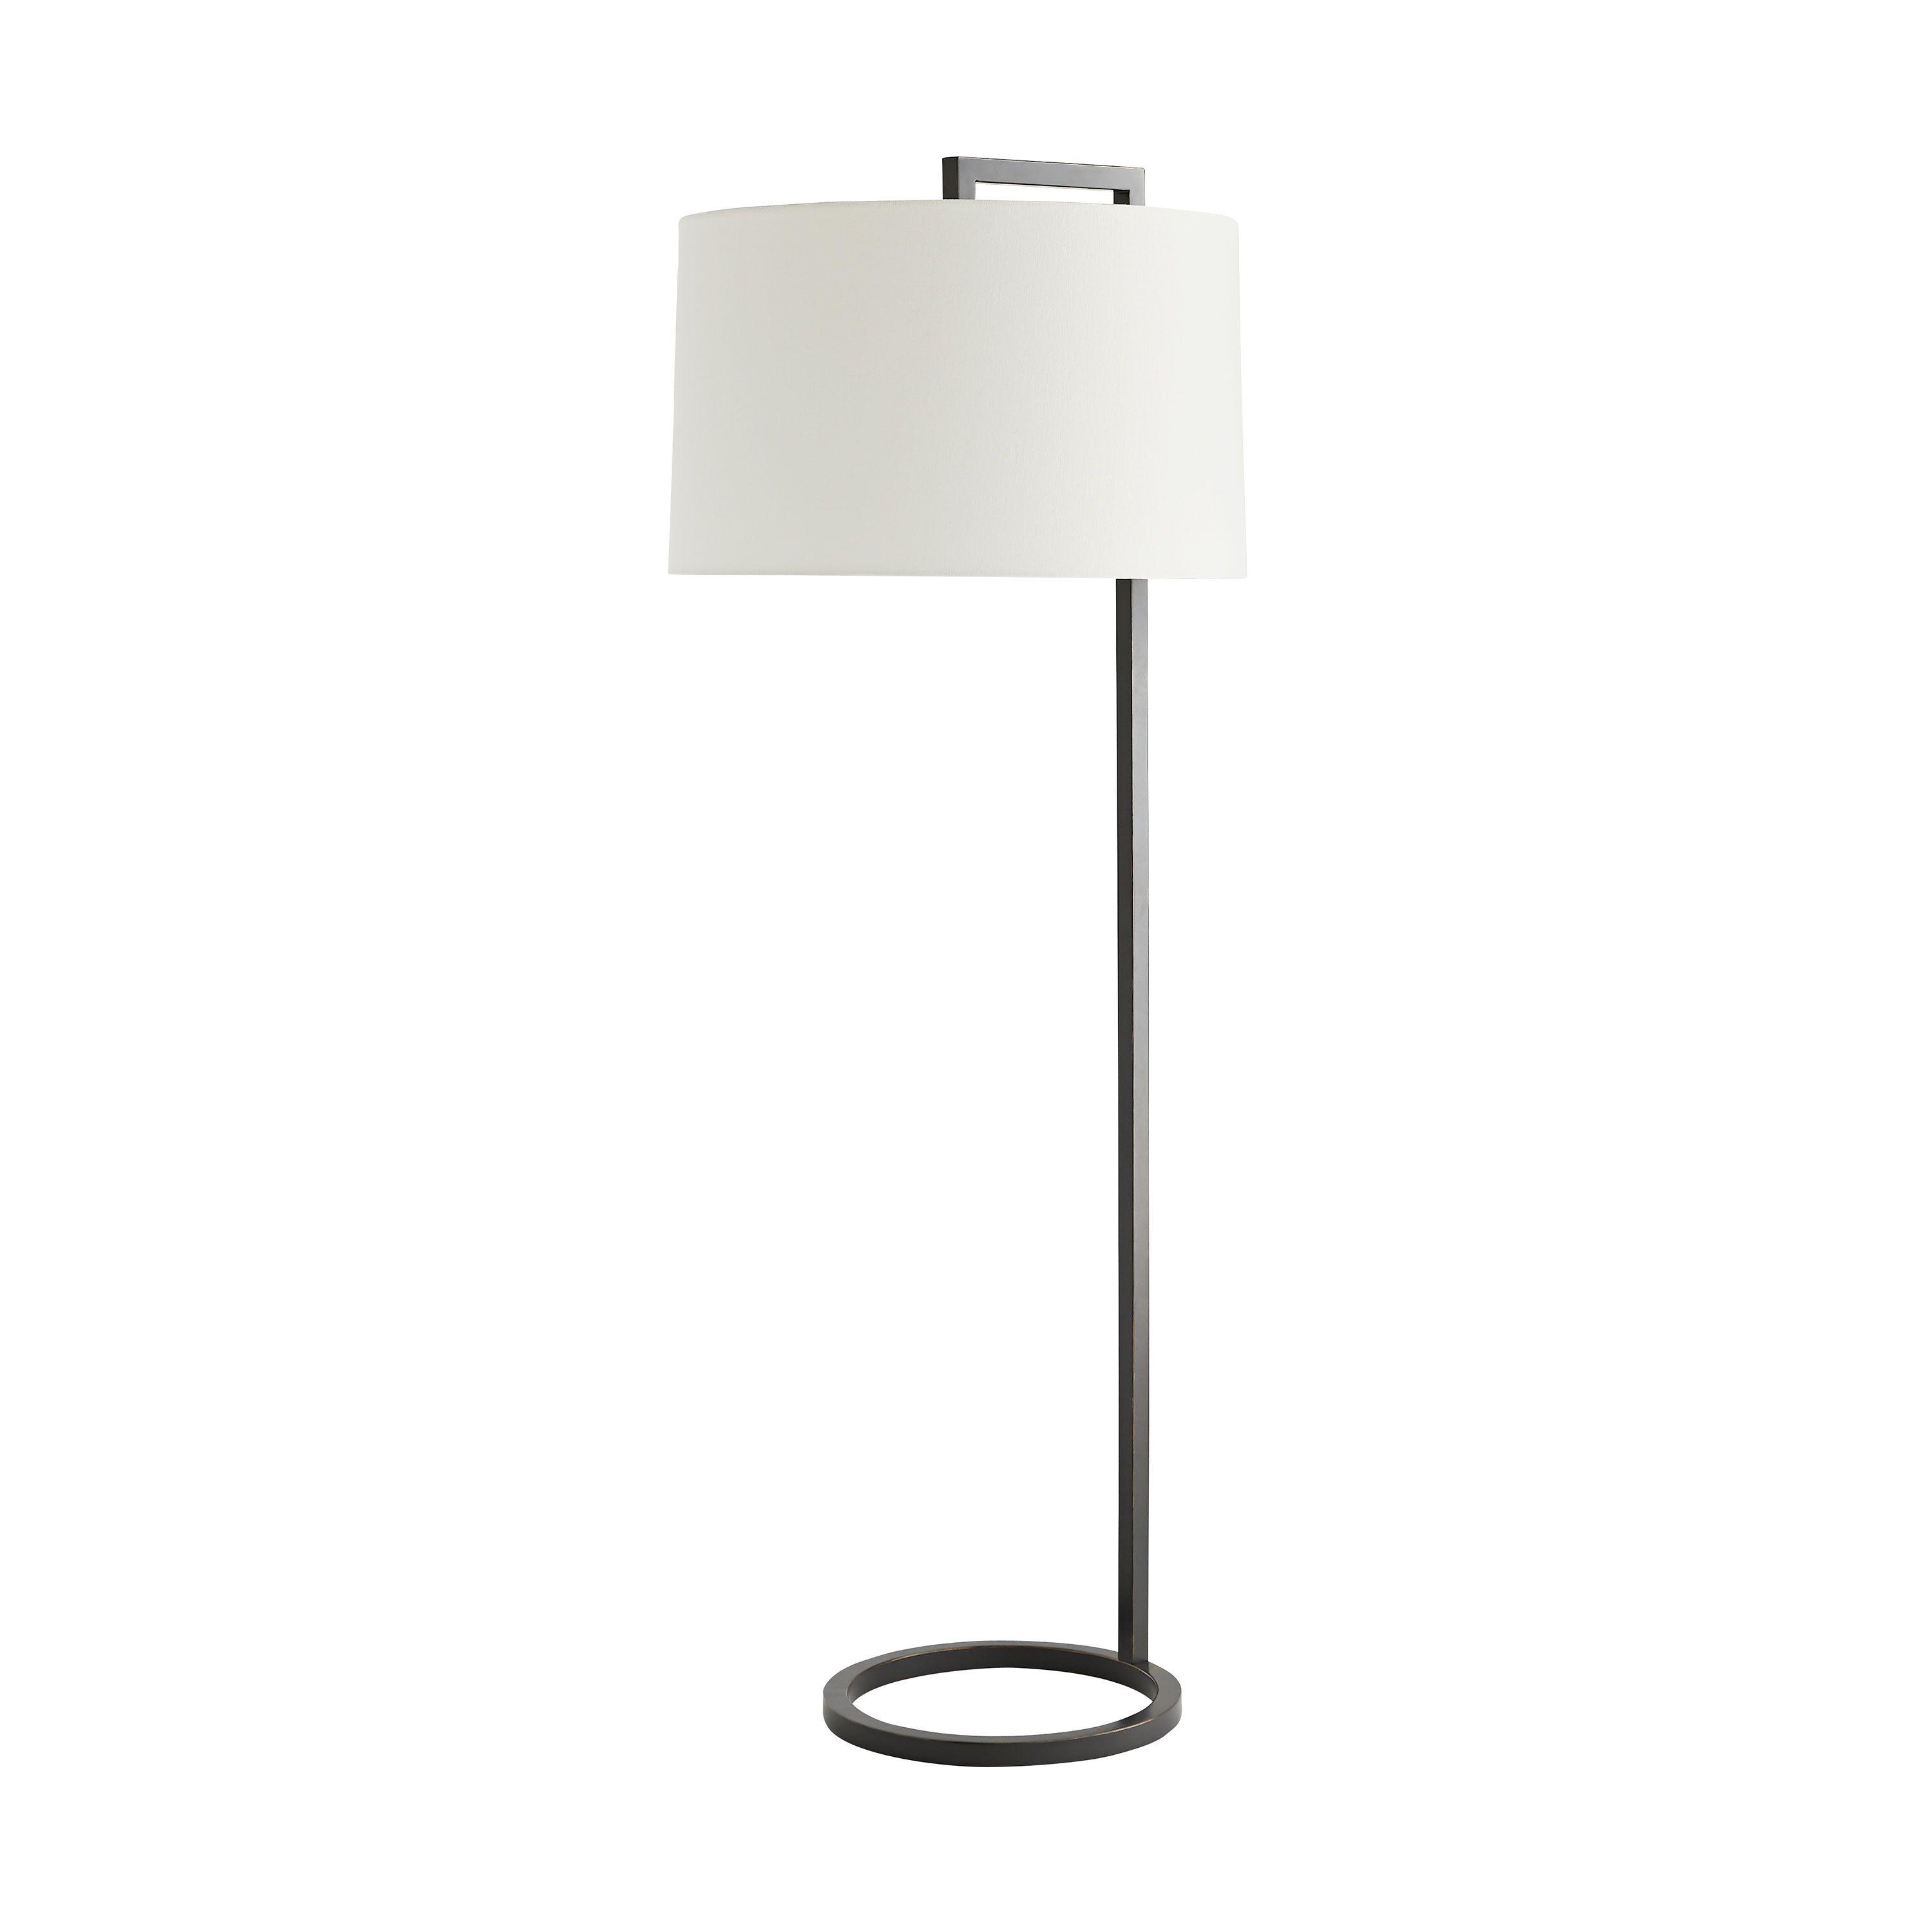 Купить Торшер Belden Floor Lamp в интернет-магазине roooms.ru